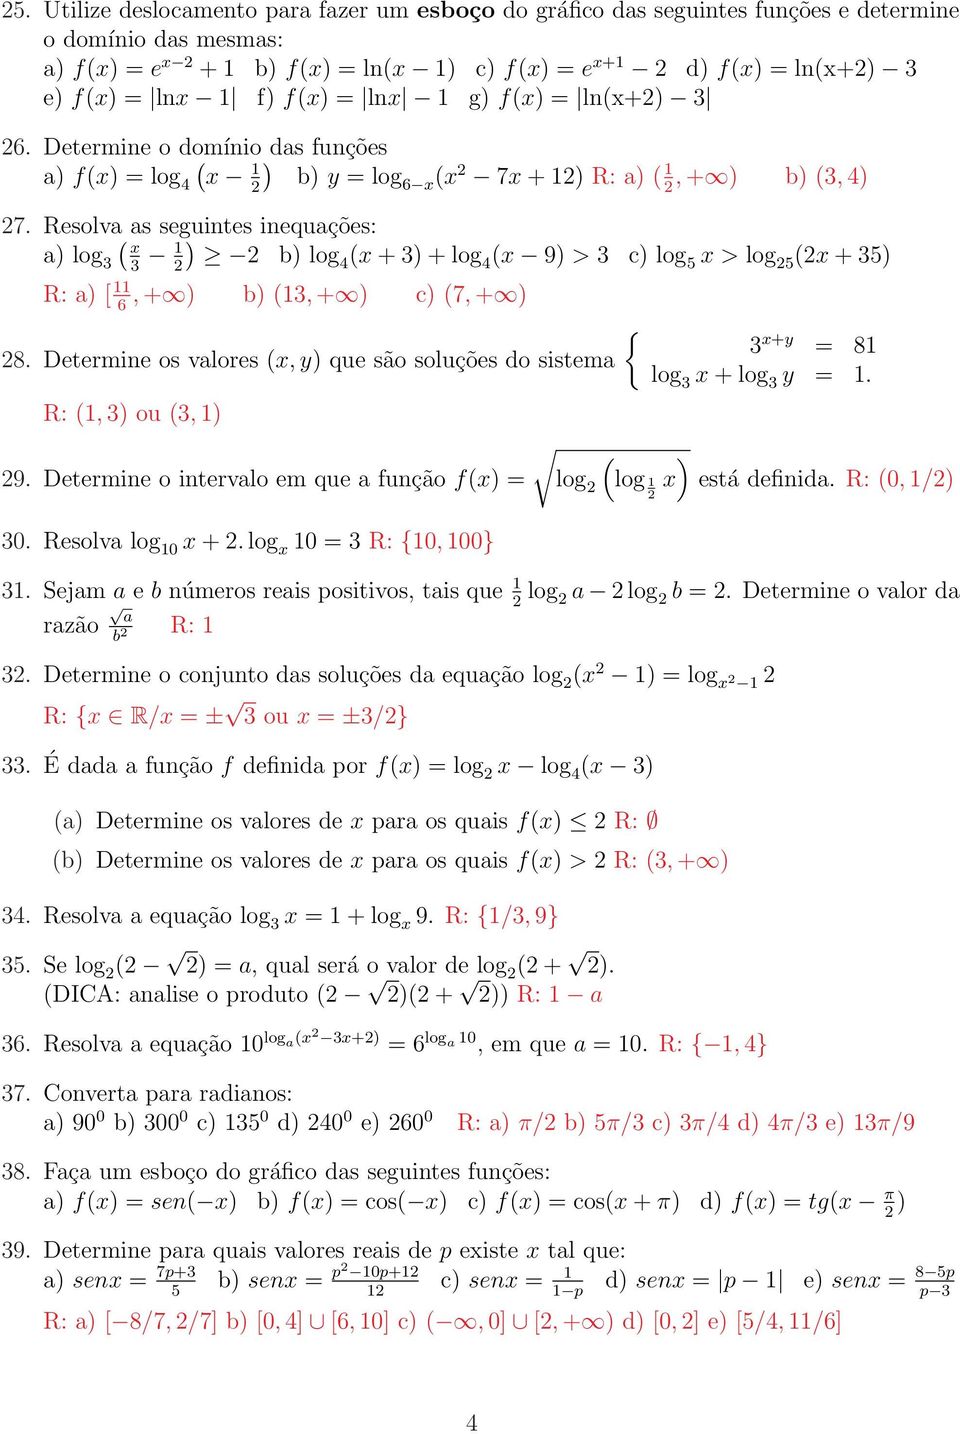 Resolva as seguintes inequações: a) log ( ) b) log ( + ) + log ( 9) > c) log 5 > log 5 ( + 5) R: a) [, + ) b) (, + ) c) (7, + ) 6 { 8.